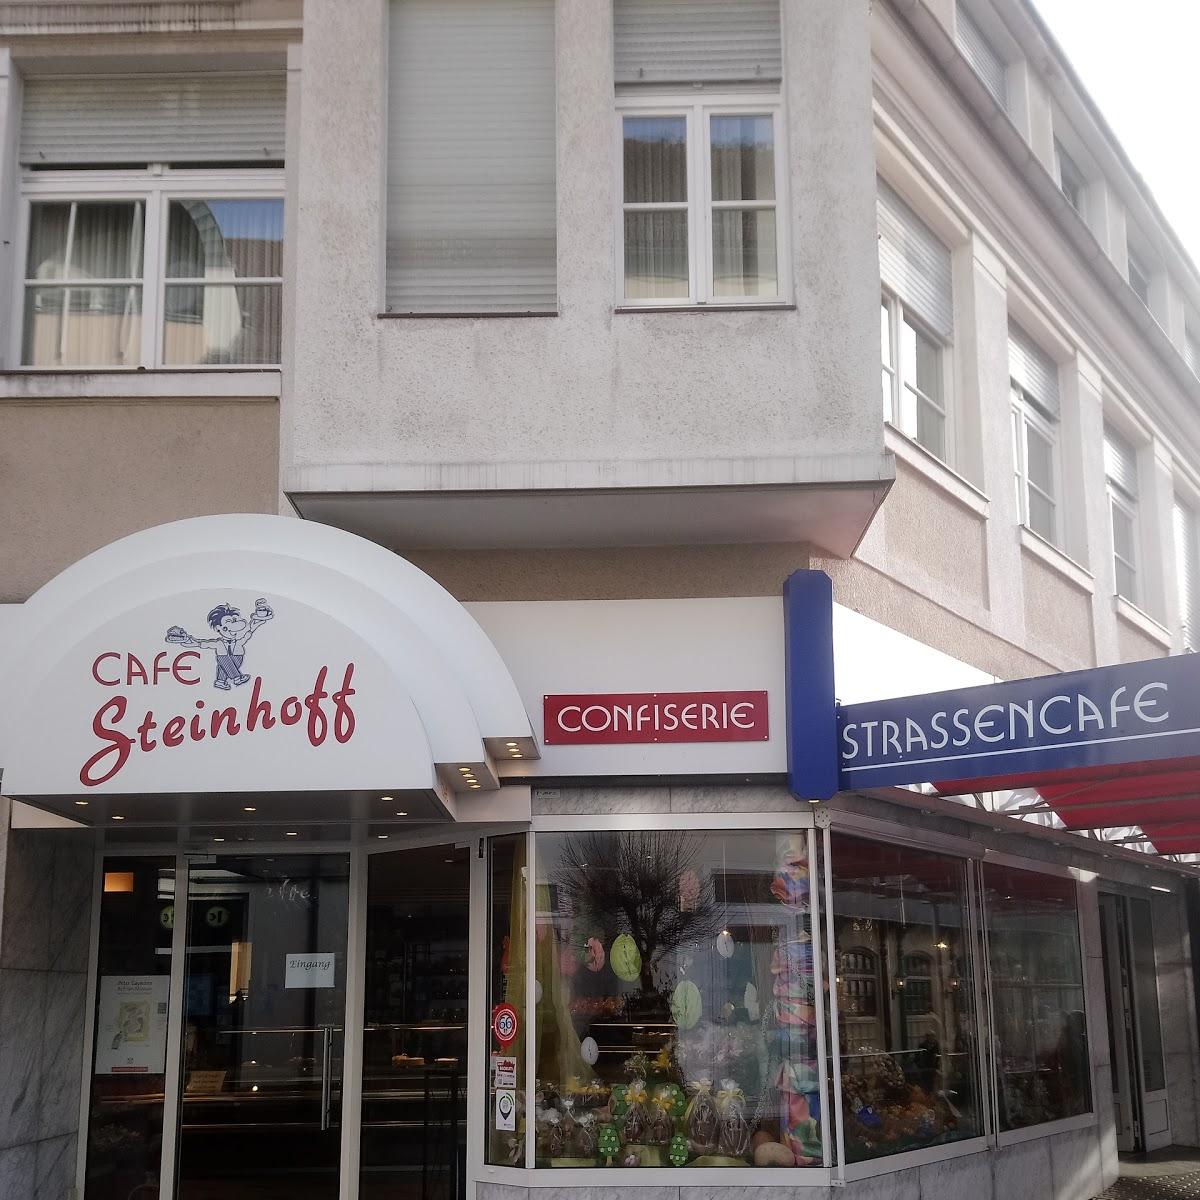 Restaurant "Konditorei & Cafe Steinhoff Bonsel" in Beckum